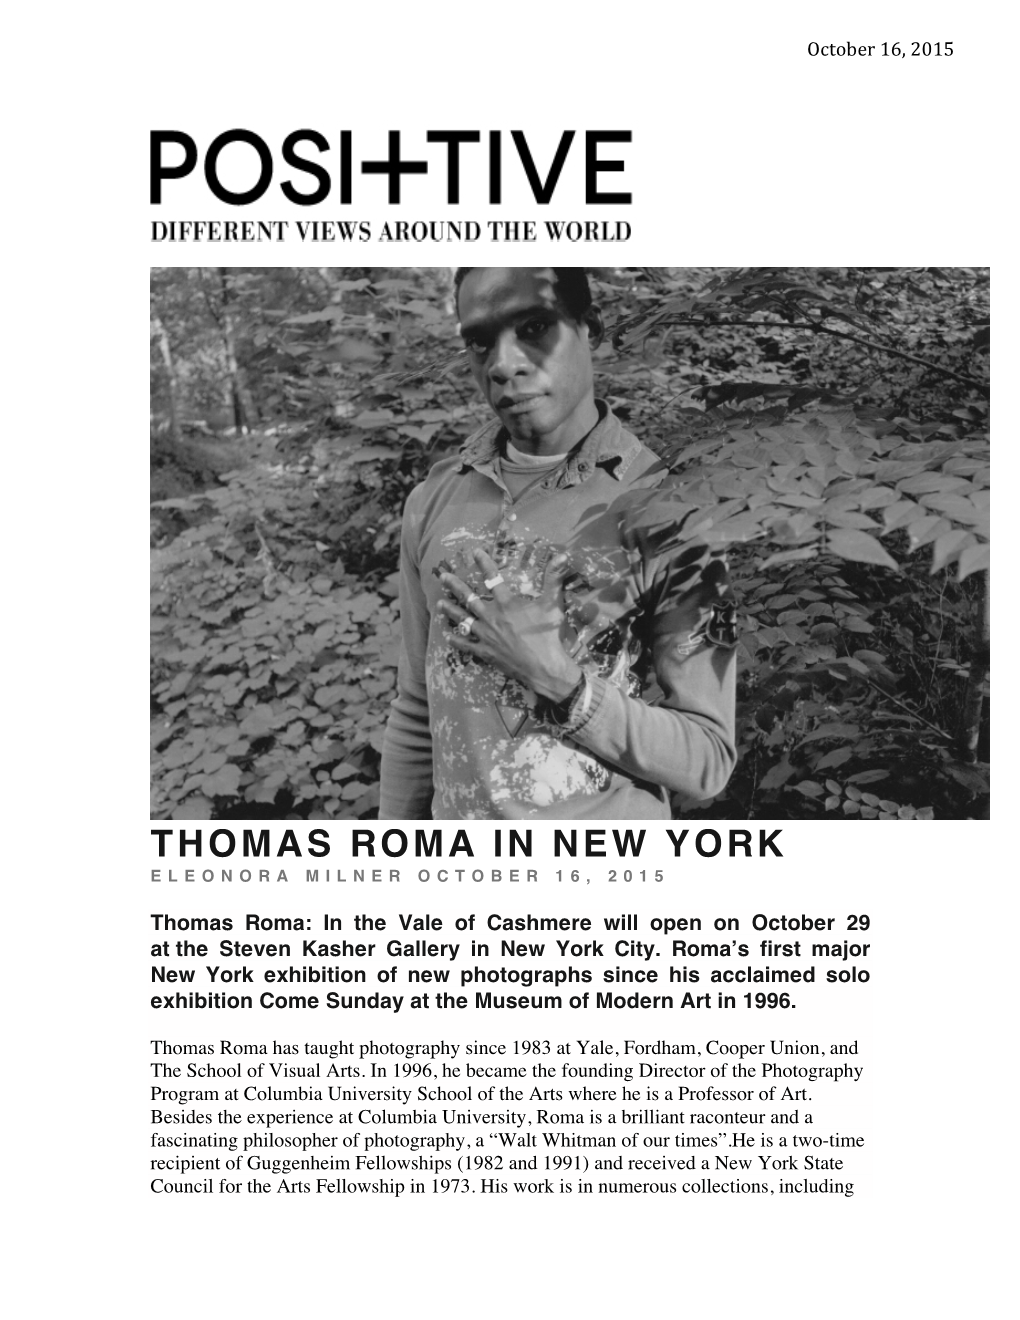 Thomas Roma in New York Eleonora Milner October 16, 2015